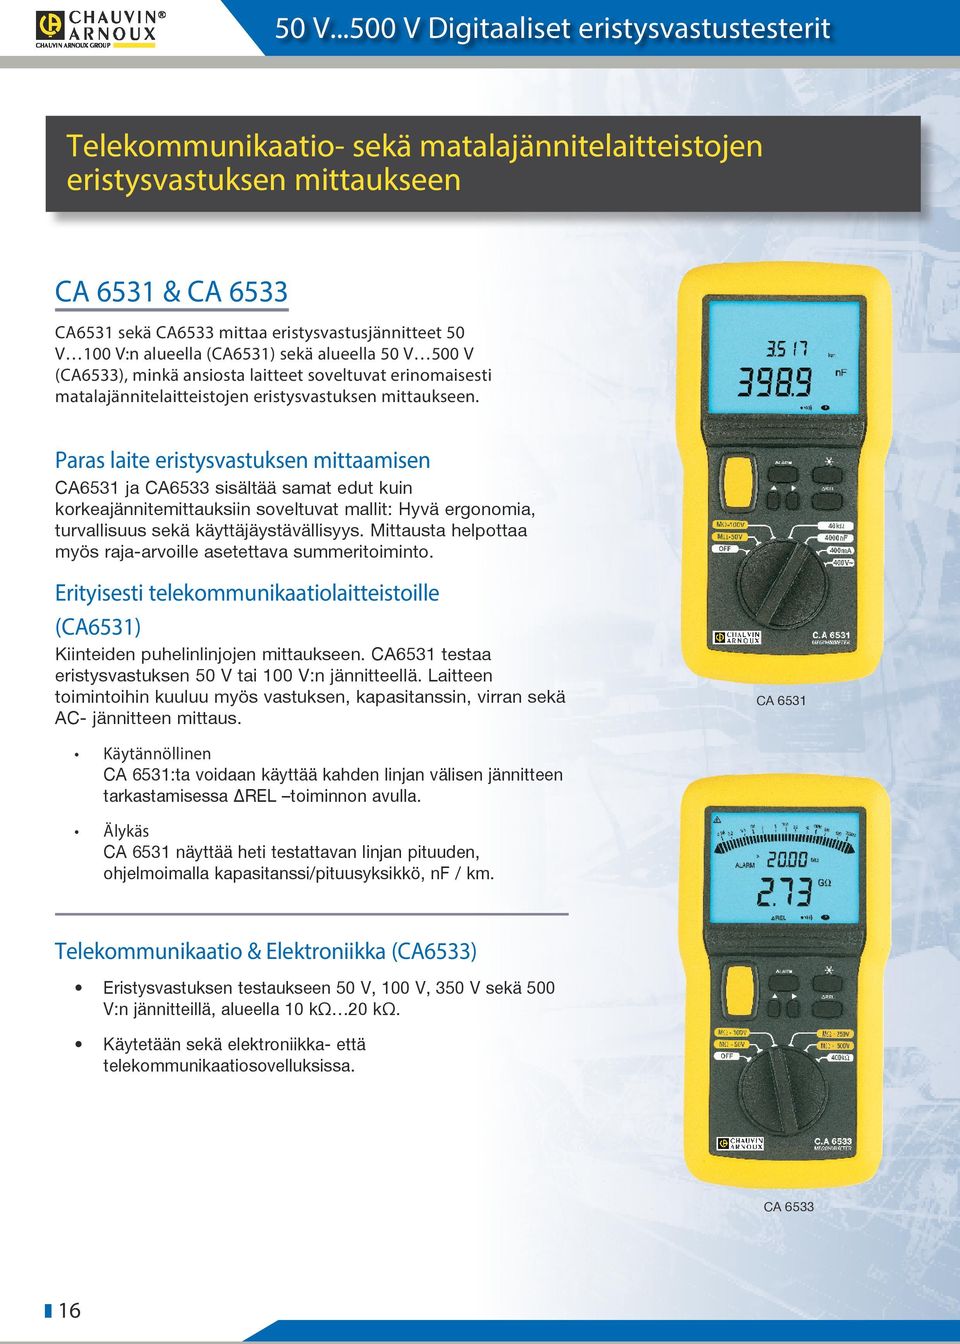 Paras laite eristysvastuksen mittaamisen CA6531 ja CA6533 sisältää samat edut kuin korkeajännitemittauksiin soveltuvat mallit: Hyvä ergonomia, turvallisuus sekä käyttäjäystävällisyys.